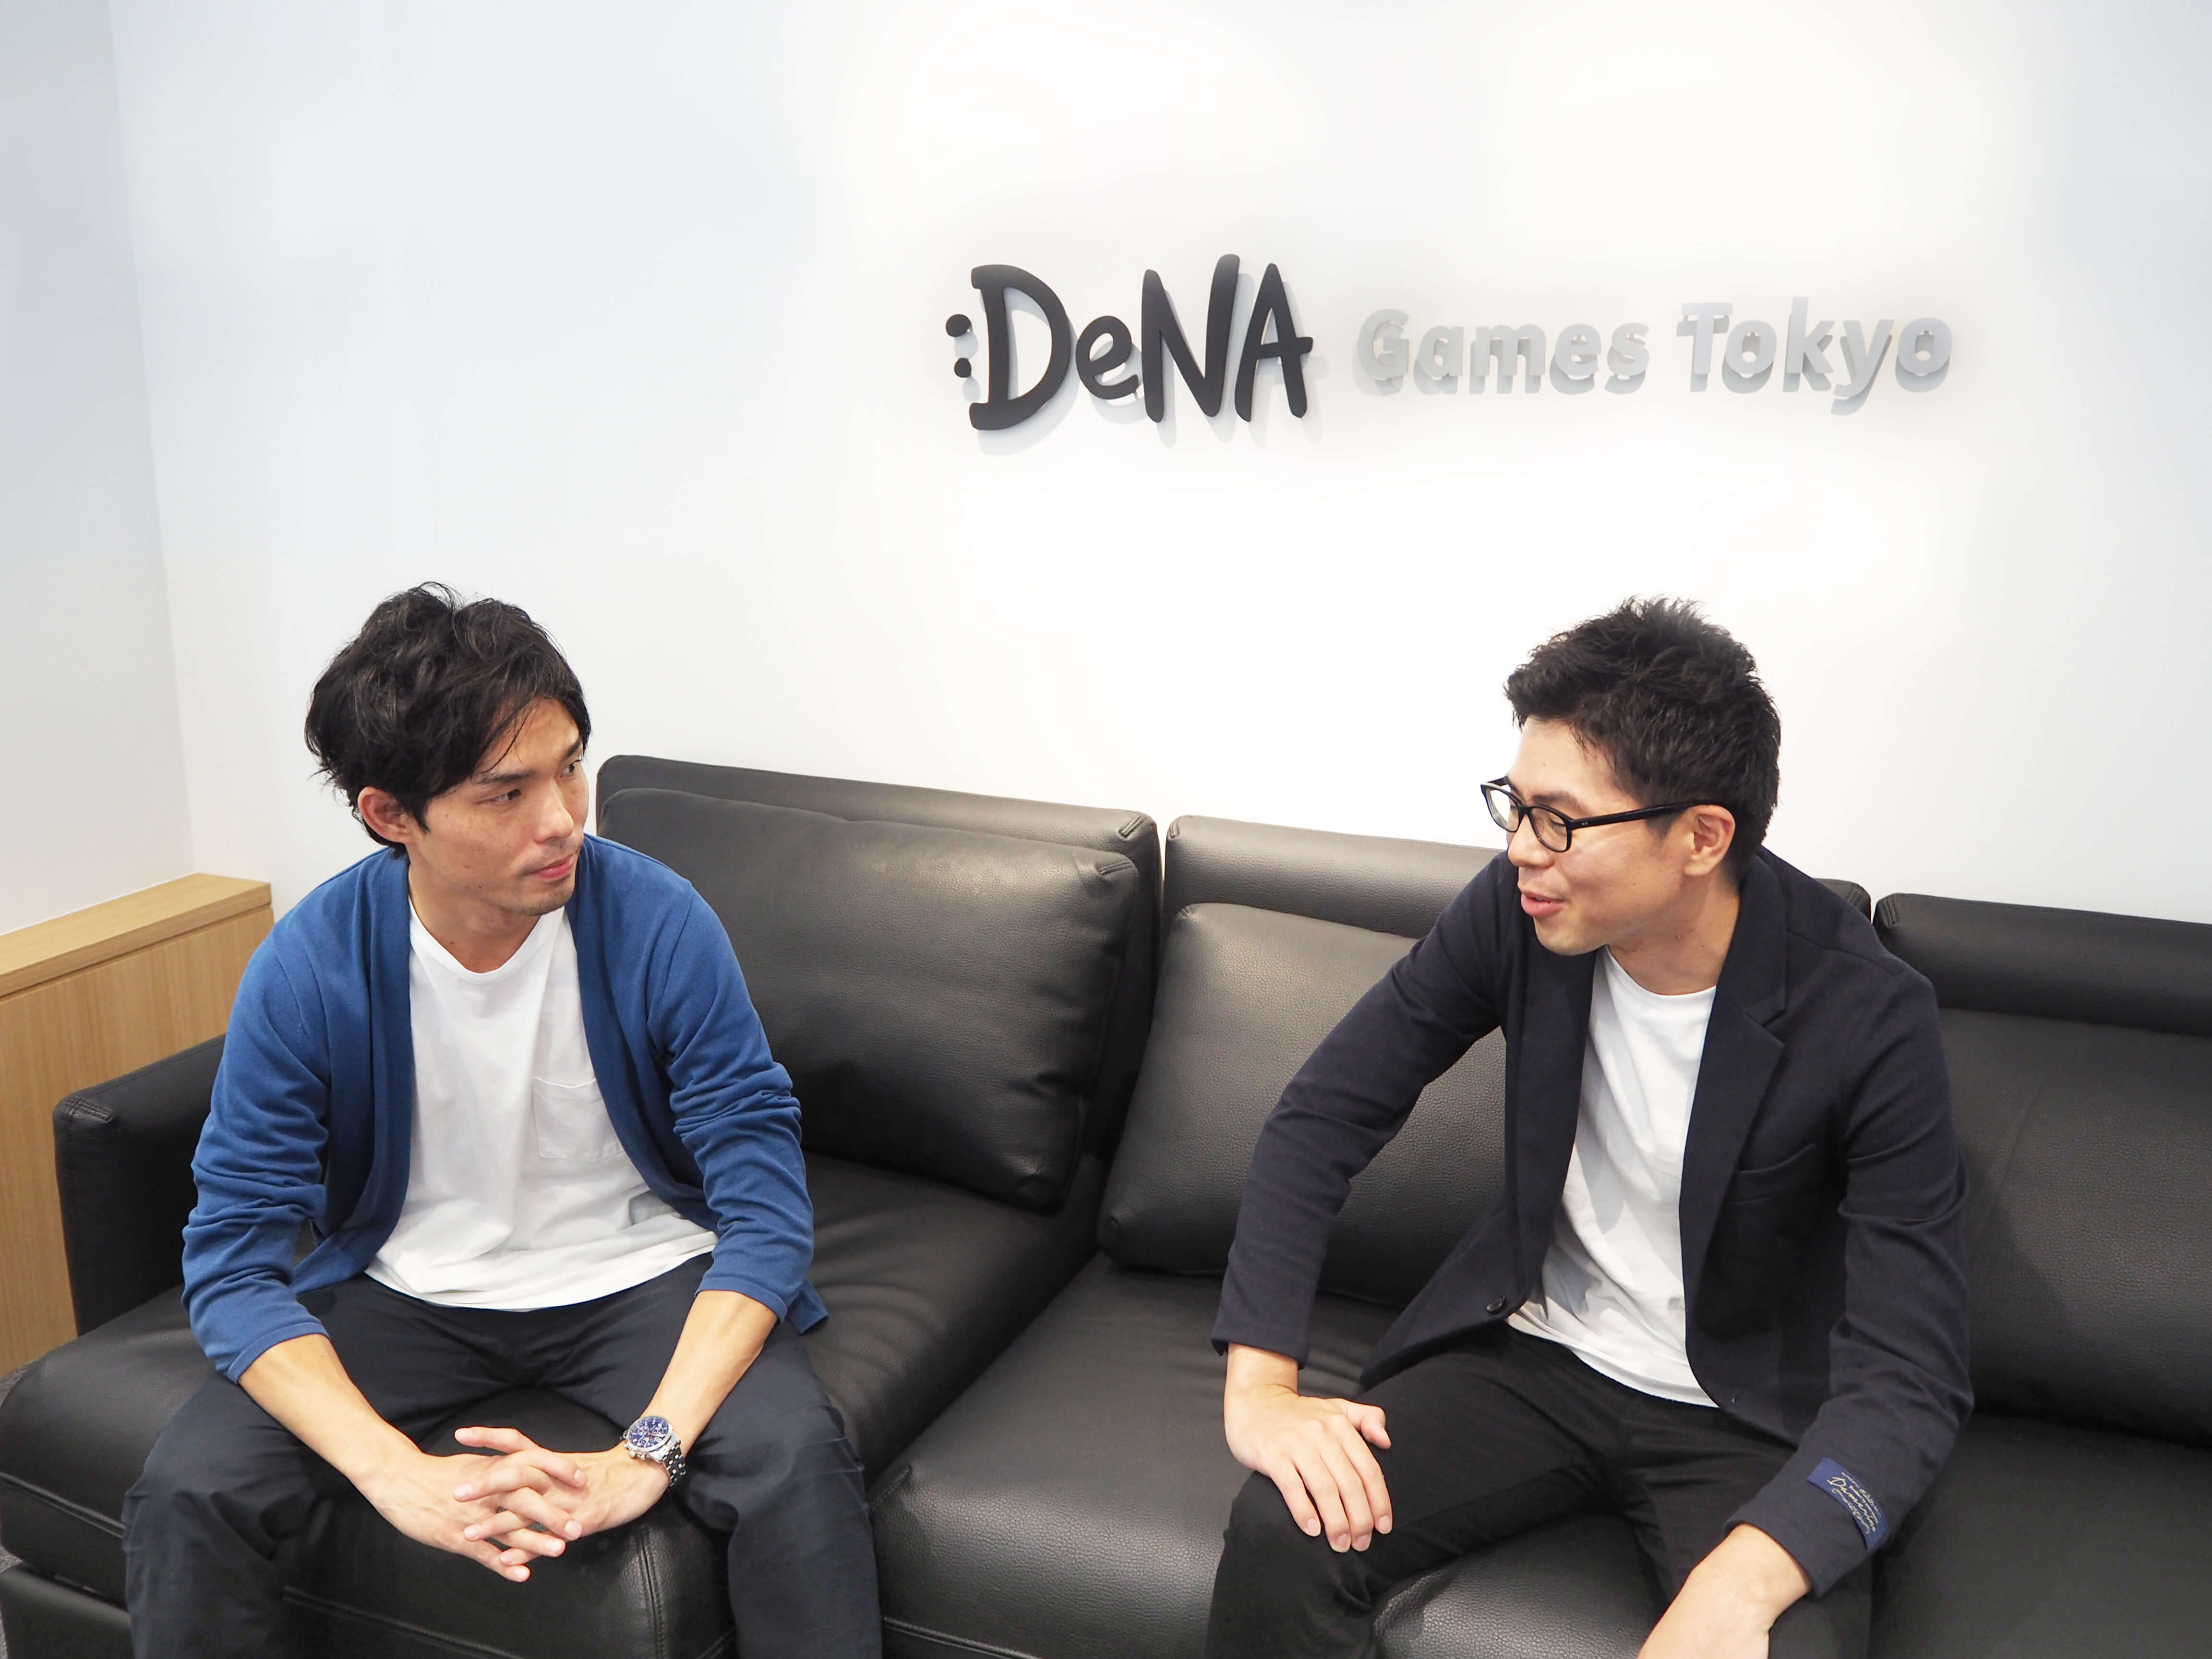 モバイルゲーム運営に特化したスペシャリスト集団 Dena Games Tokyoインタビュー ゲーム運営の可能性を拡げる新たな取り組みに迫る